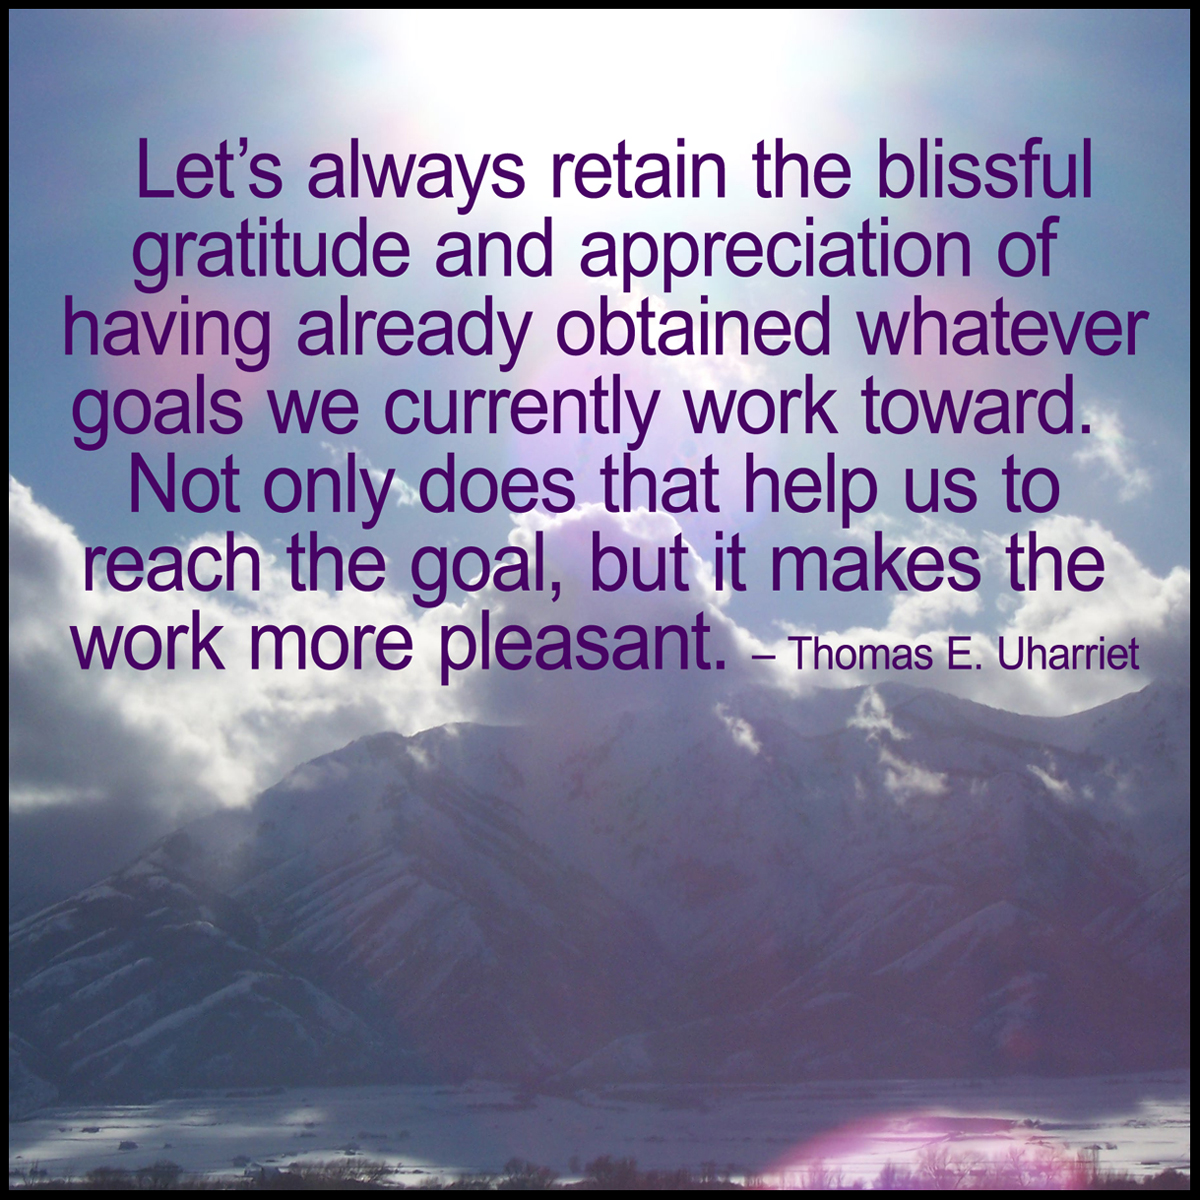 Gratitude quote by Rev. Thomas E. Uharriet.